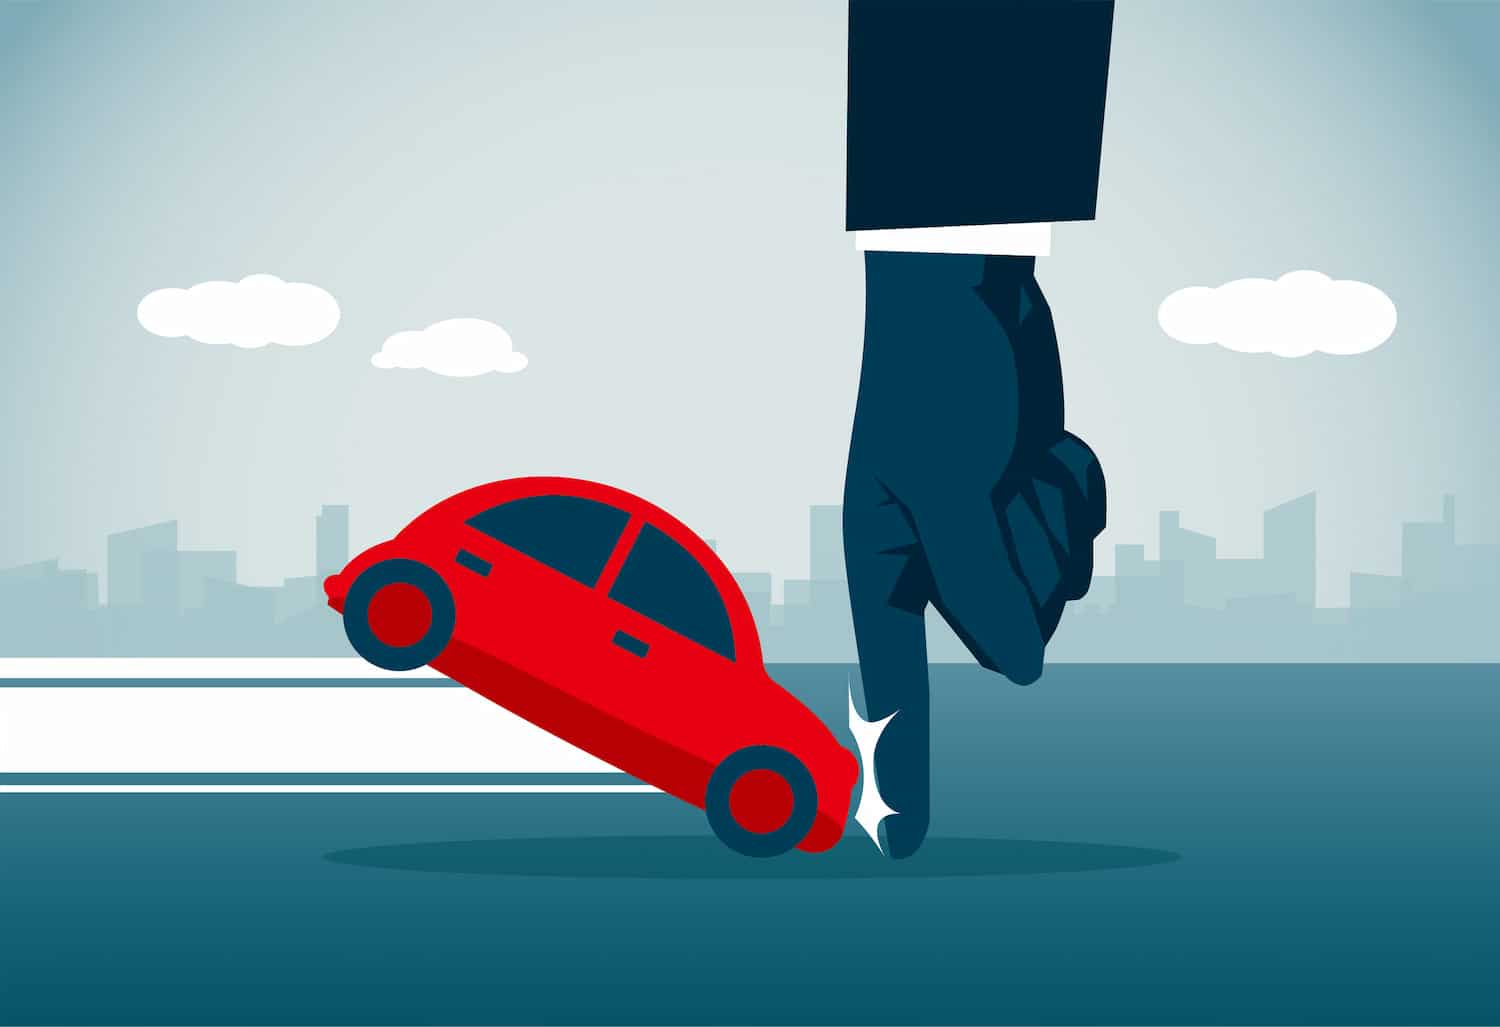 Ilustración de un coche rojo detenido por una mano, simulando un frenazo